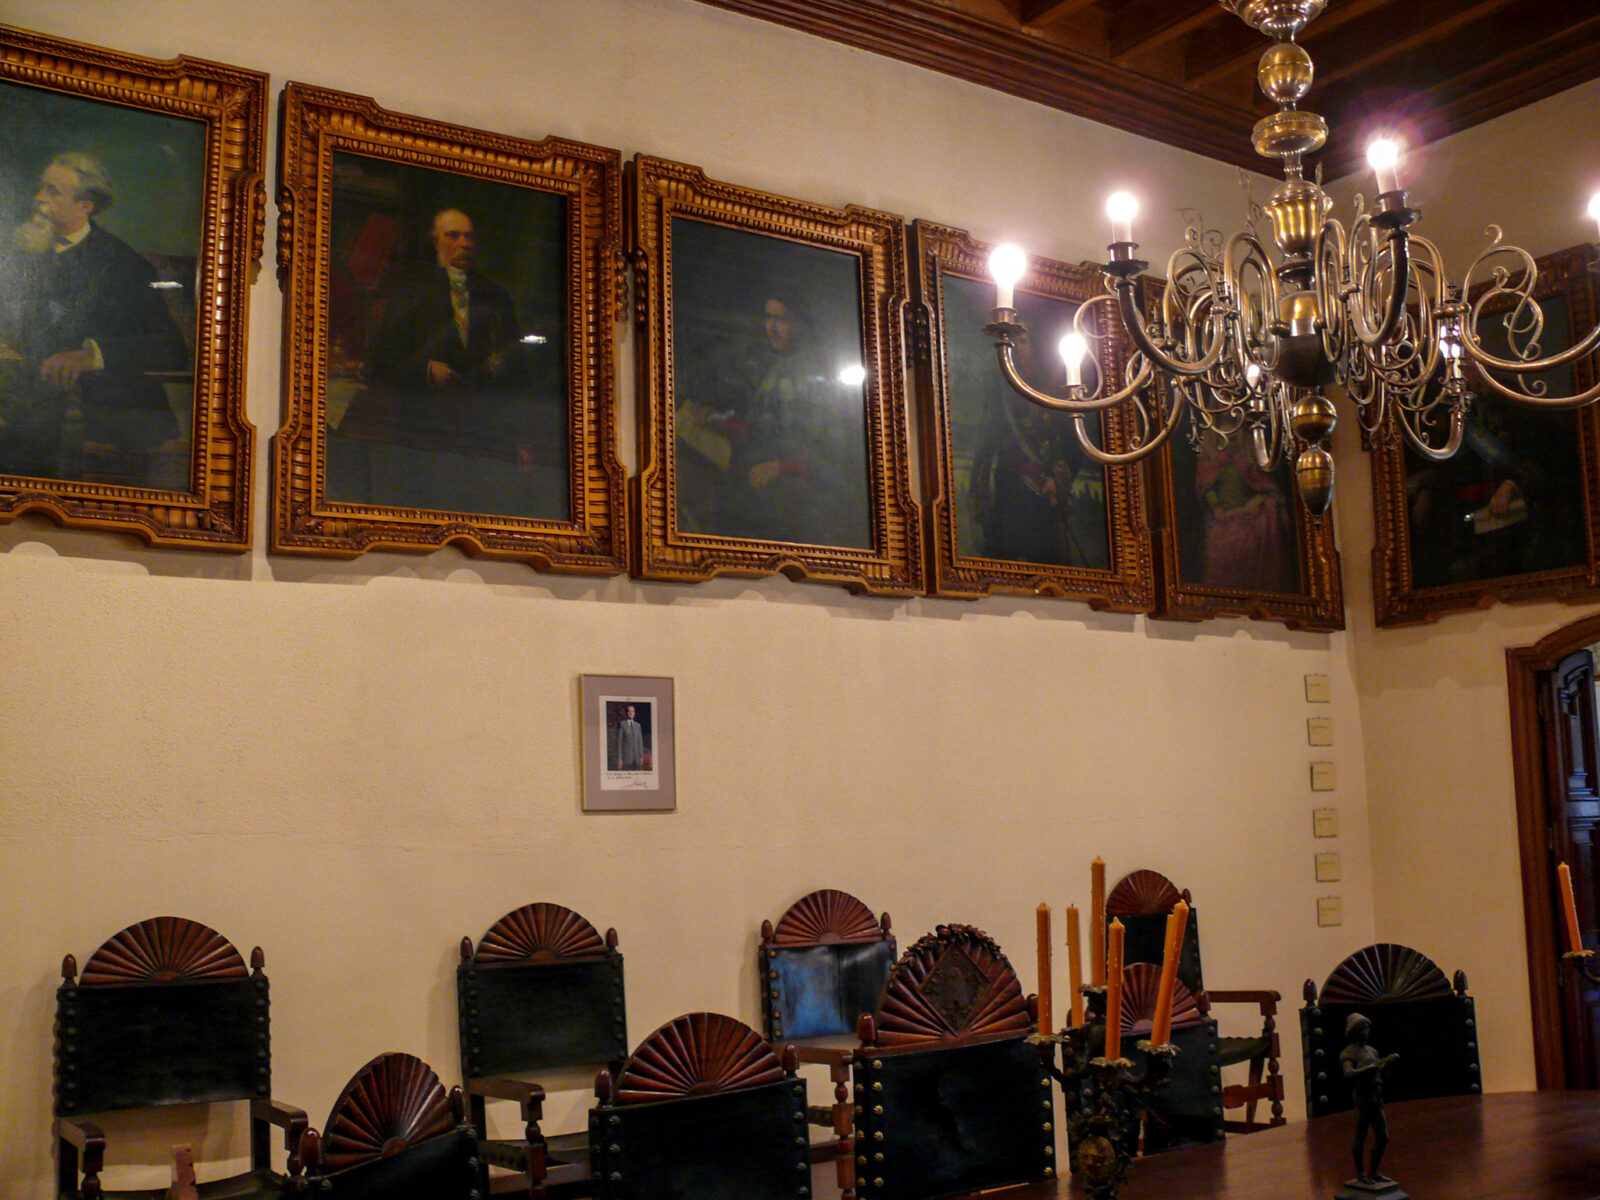 Галерея портретов прославленных каталонцев (Galeria de Catalans Il·lustres)